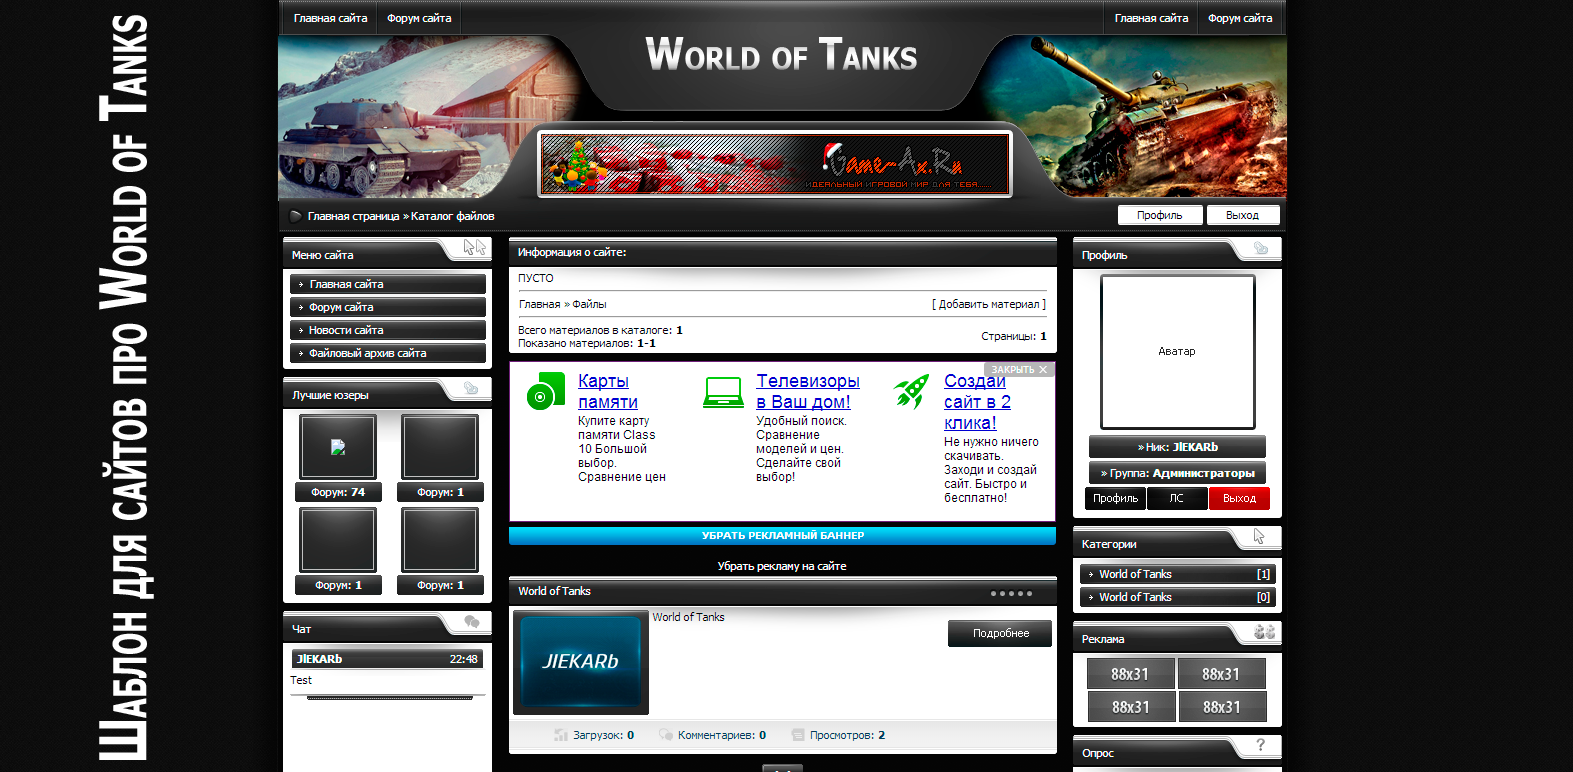 Оригинальный шаблон для сайтов World of Tanks